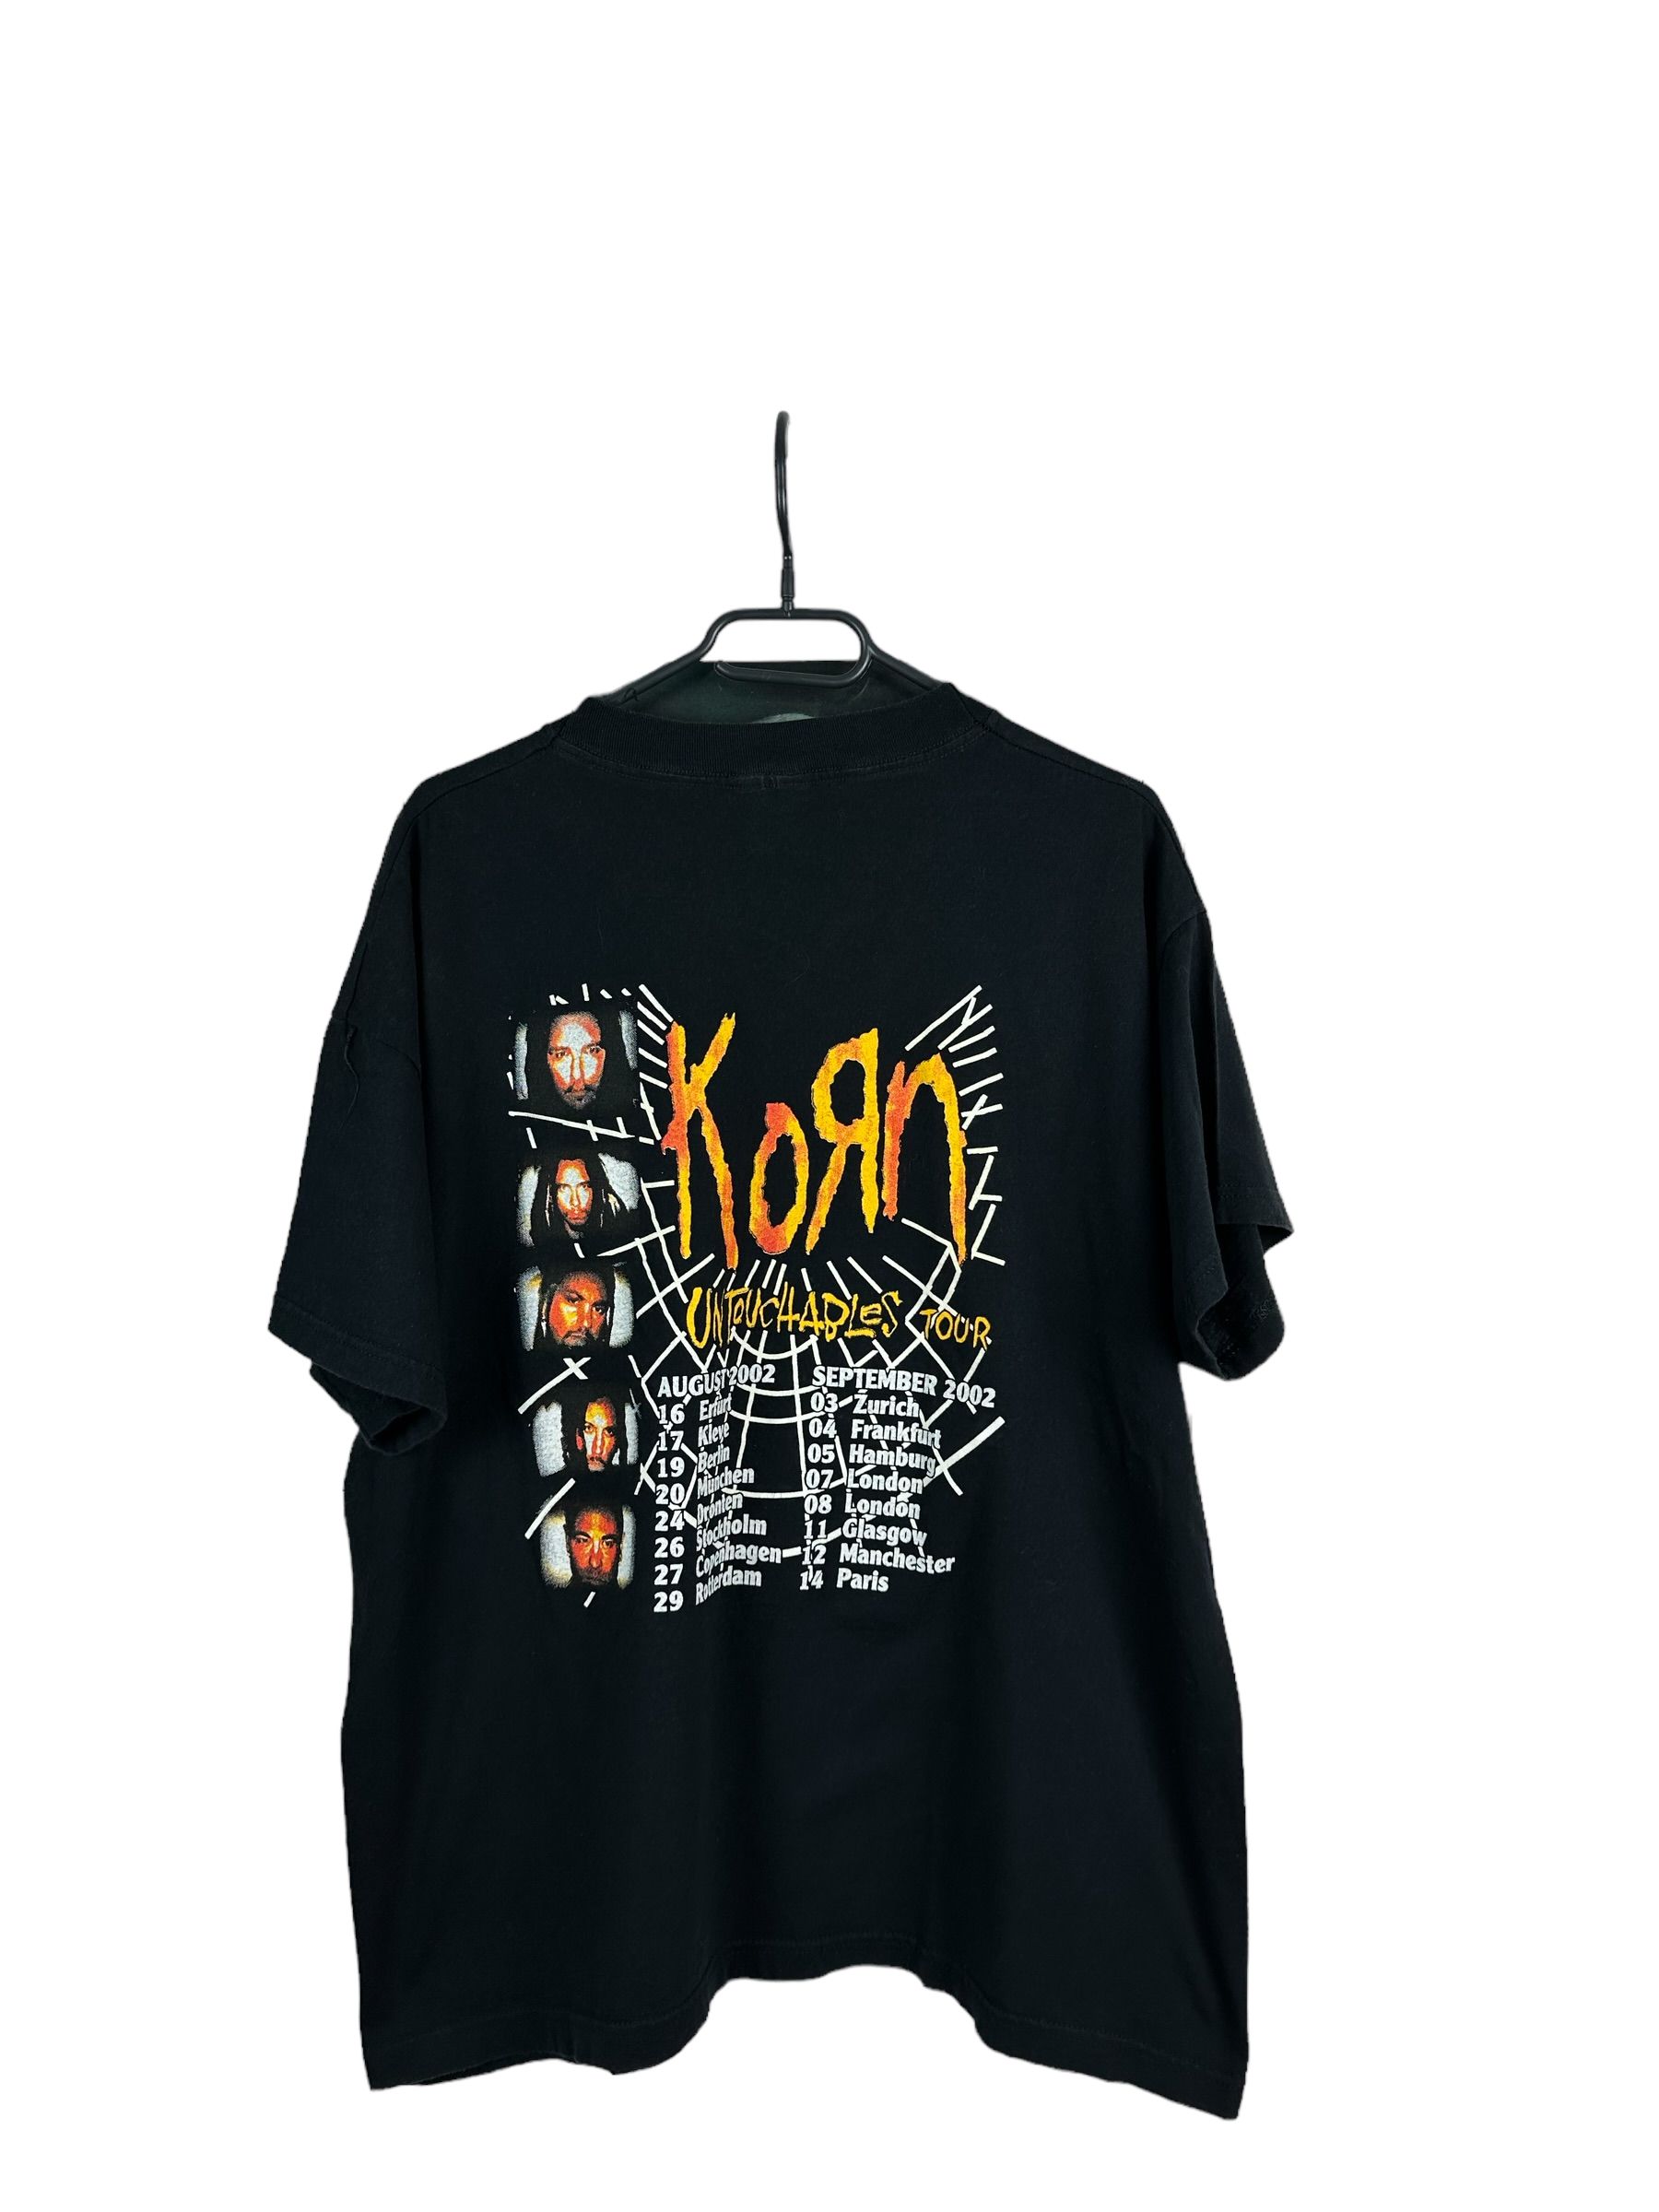 Vintage Vintage 2002 Korn Untouchables Tour Band Tee Shirt Rare Size US XL / EU 56 / 4 - 1 Preview